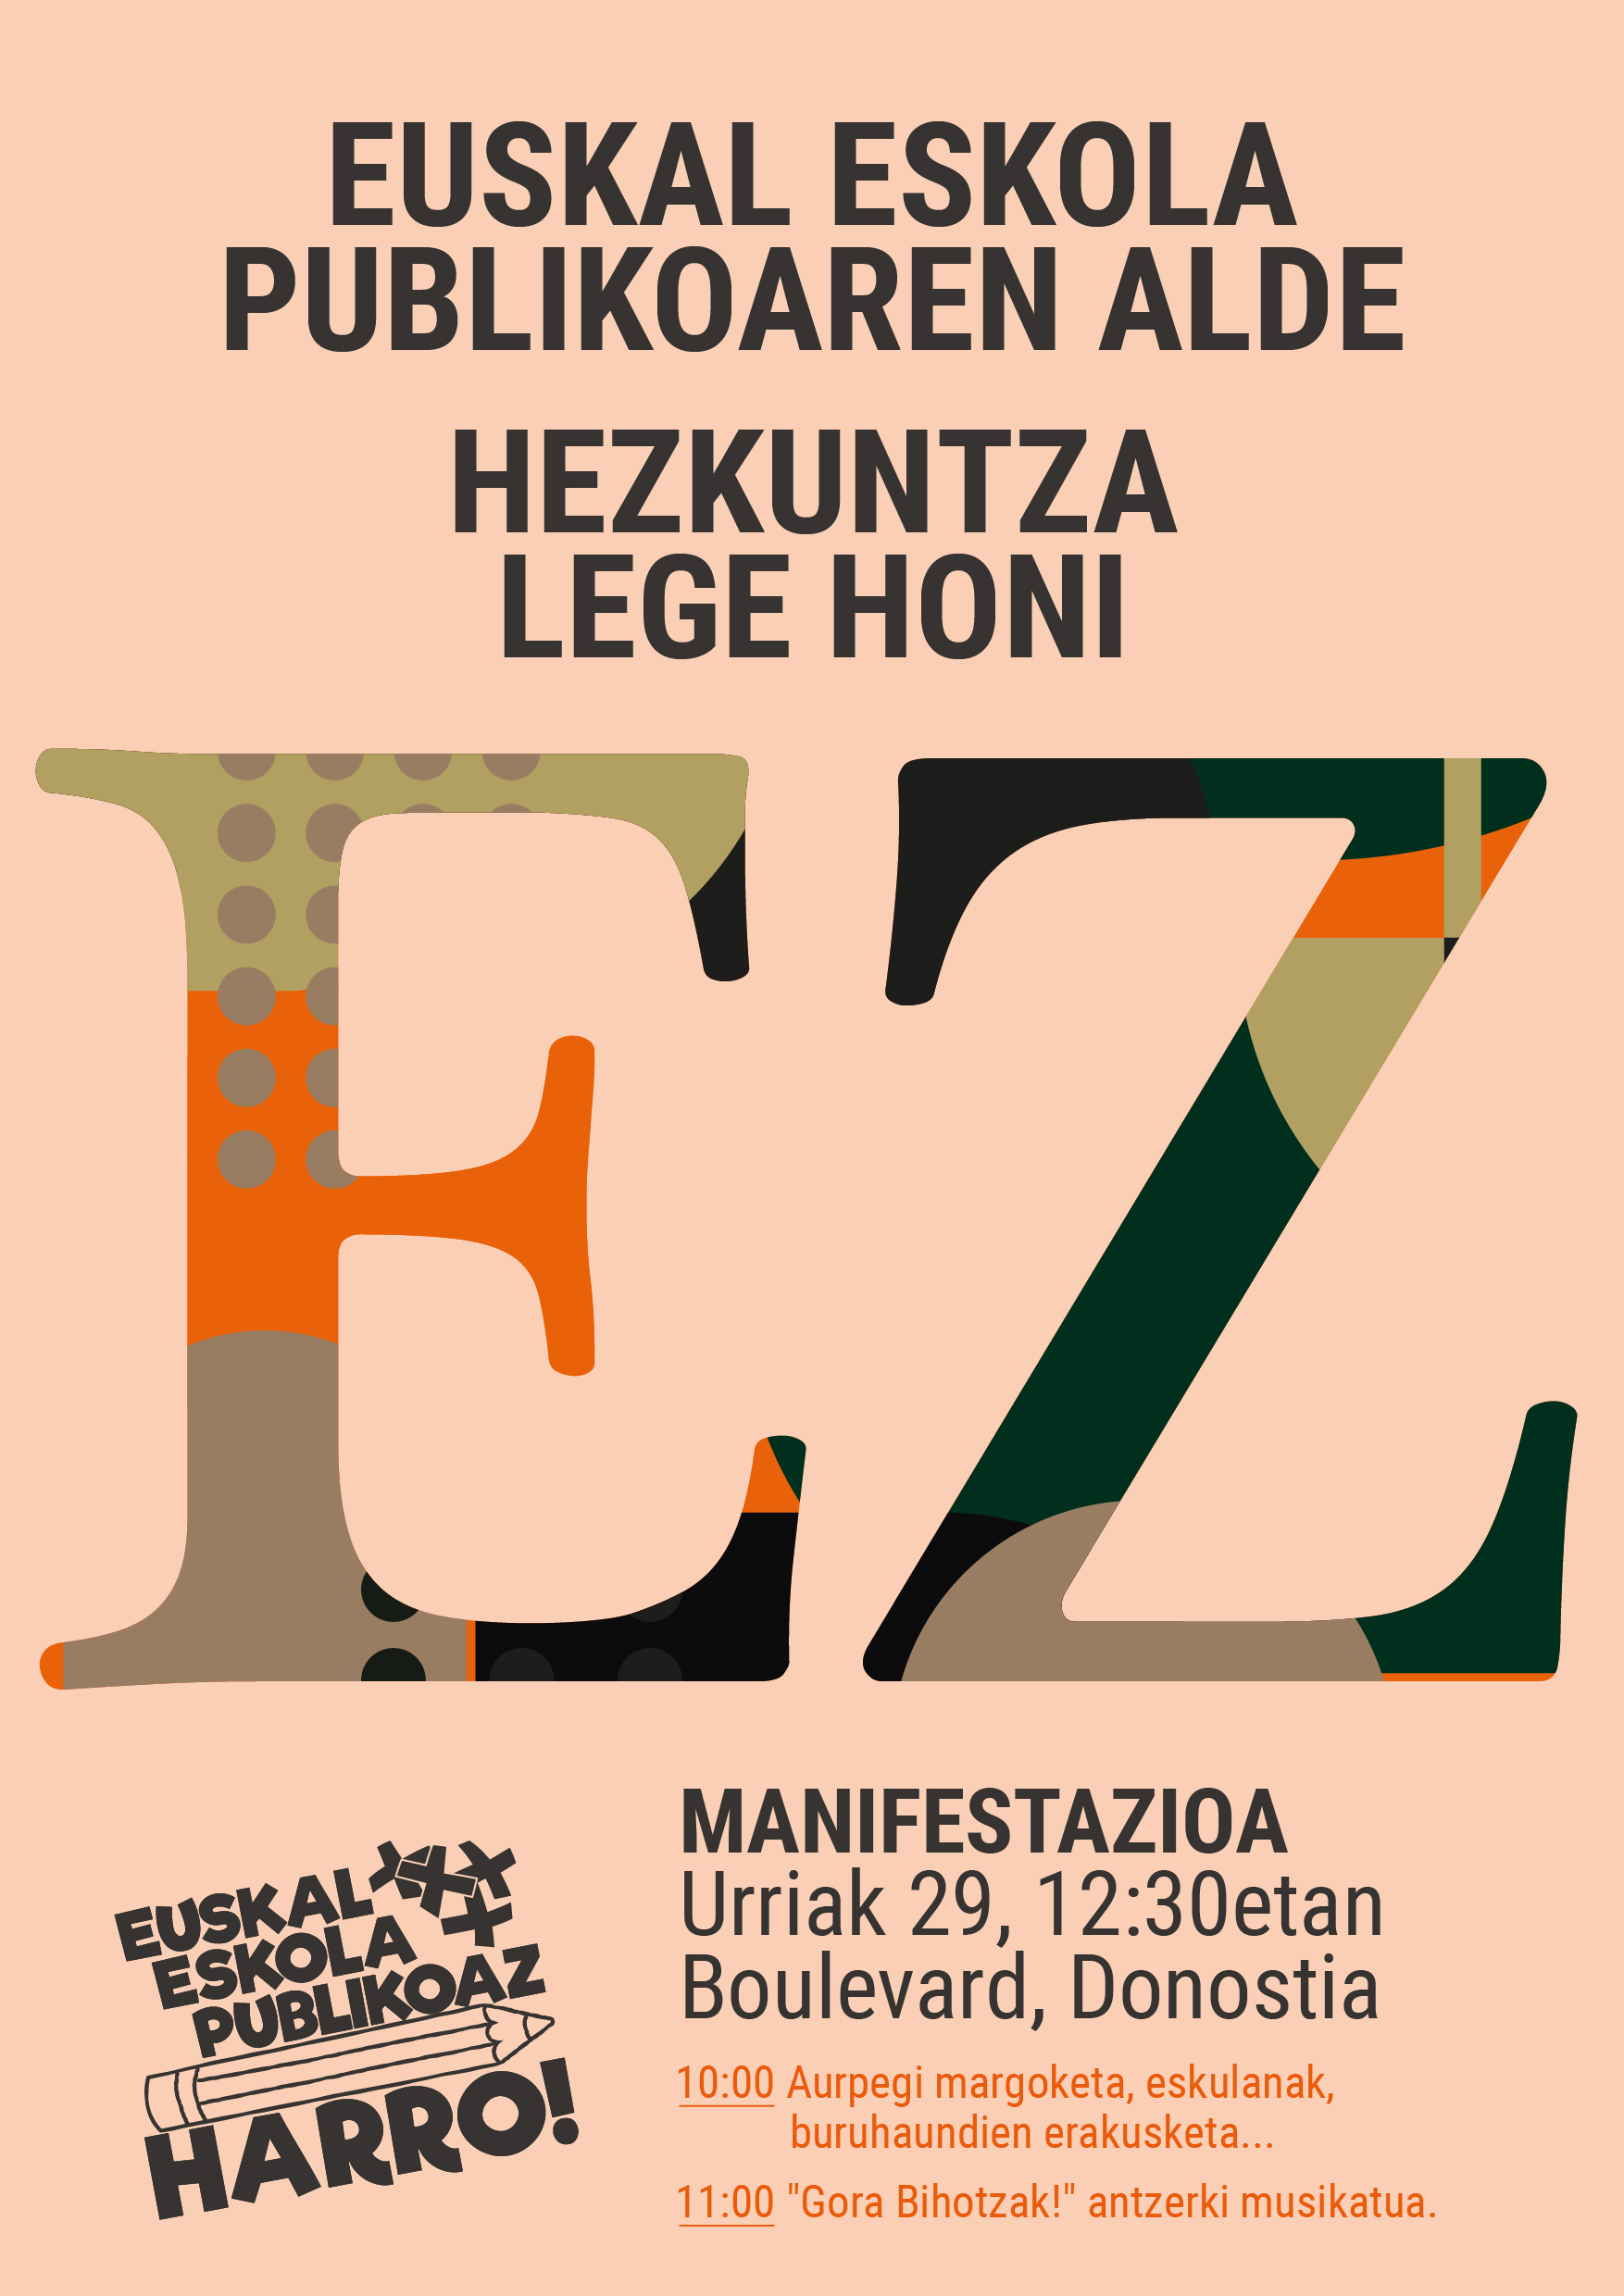 Hezkuntza Lege honi EZ! No a la nueva Ley de Educación